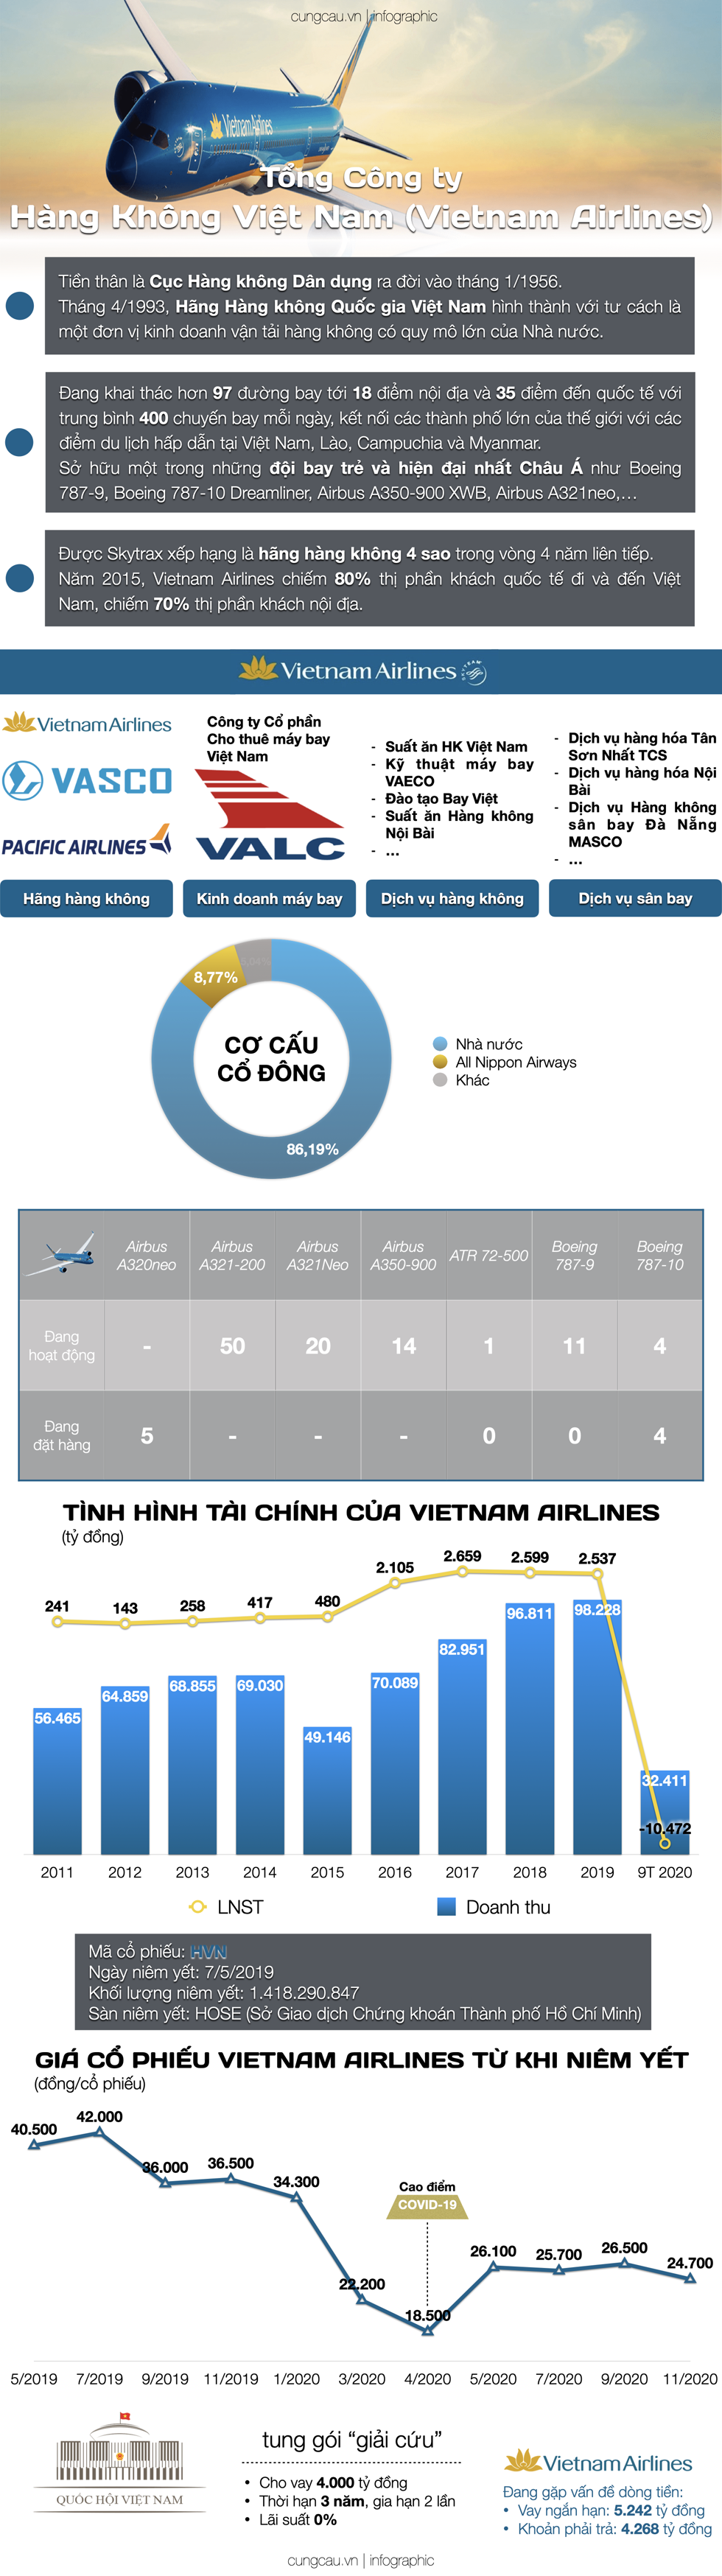 Hồ sơ doanh nghiệp: Vì sao phải giải cứu cho Vietnam Airlines?